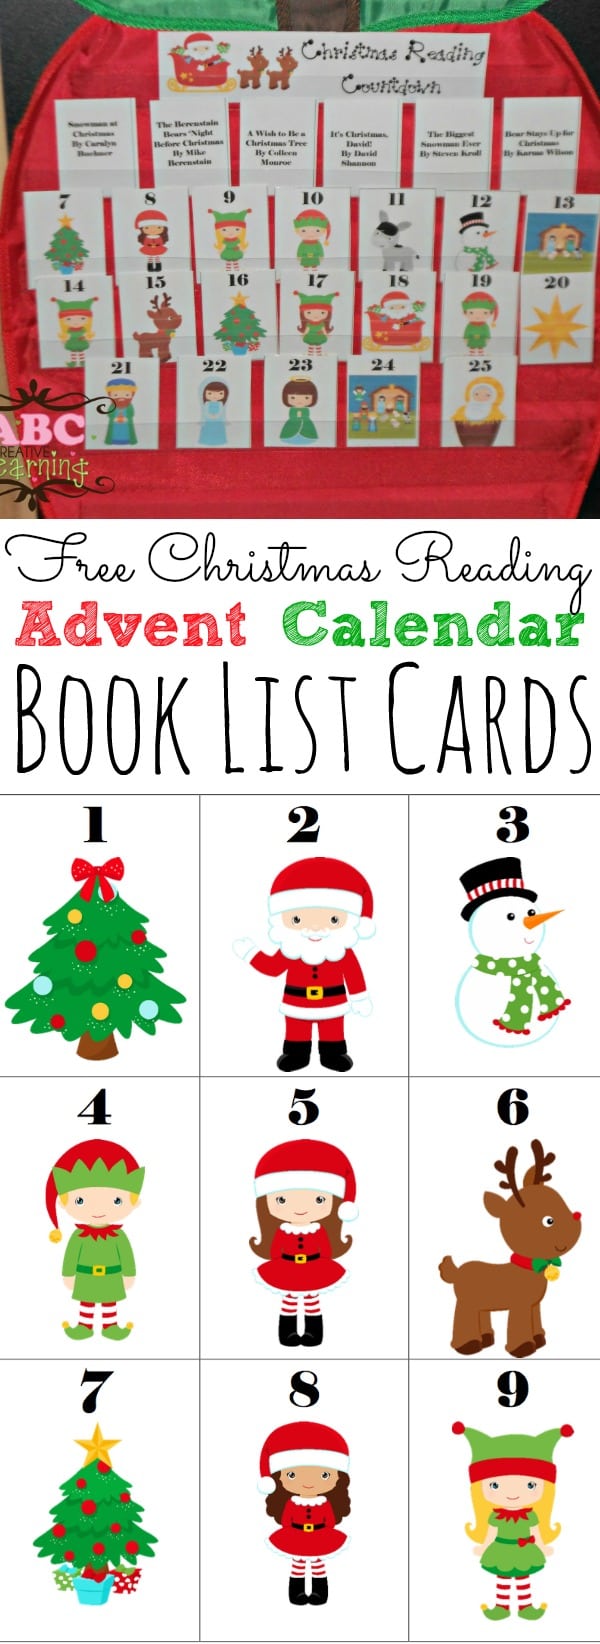 Free Christmas Reading Countdown Advent Calendar - simplytodaylife.com